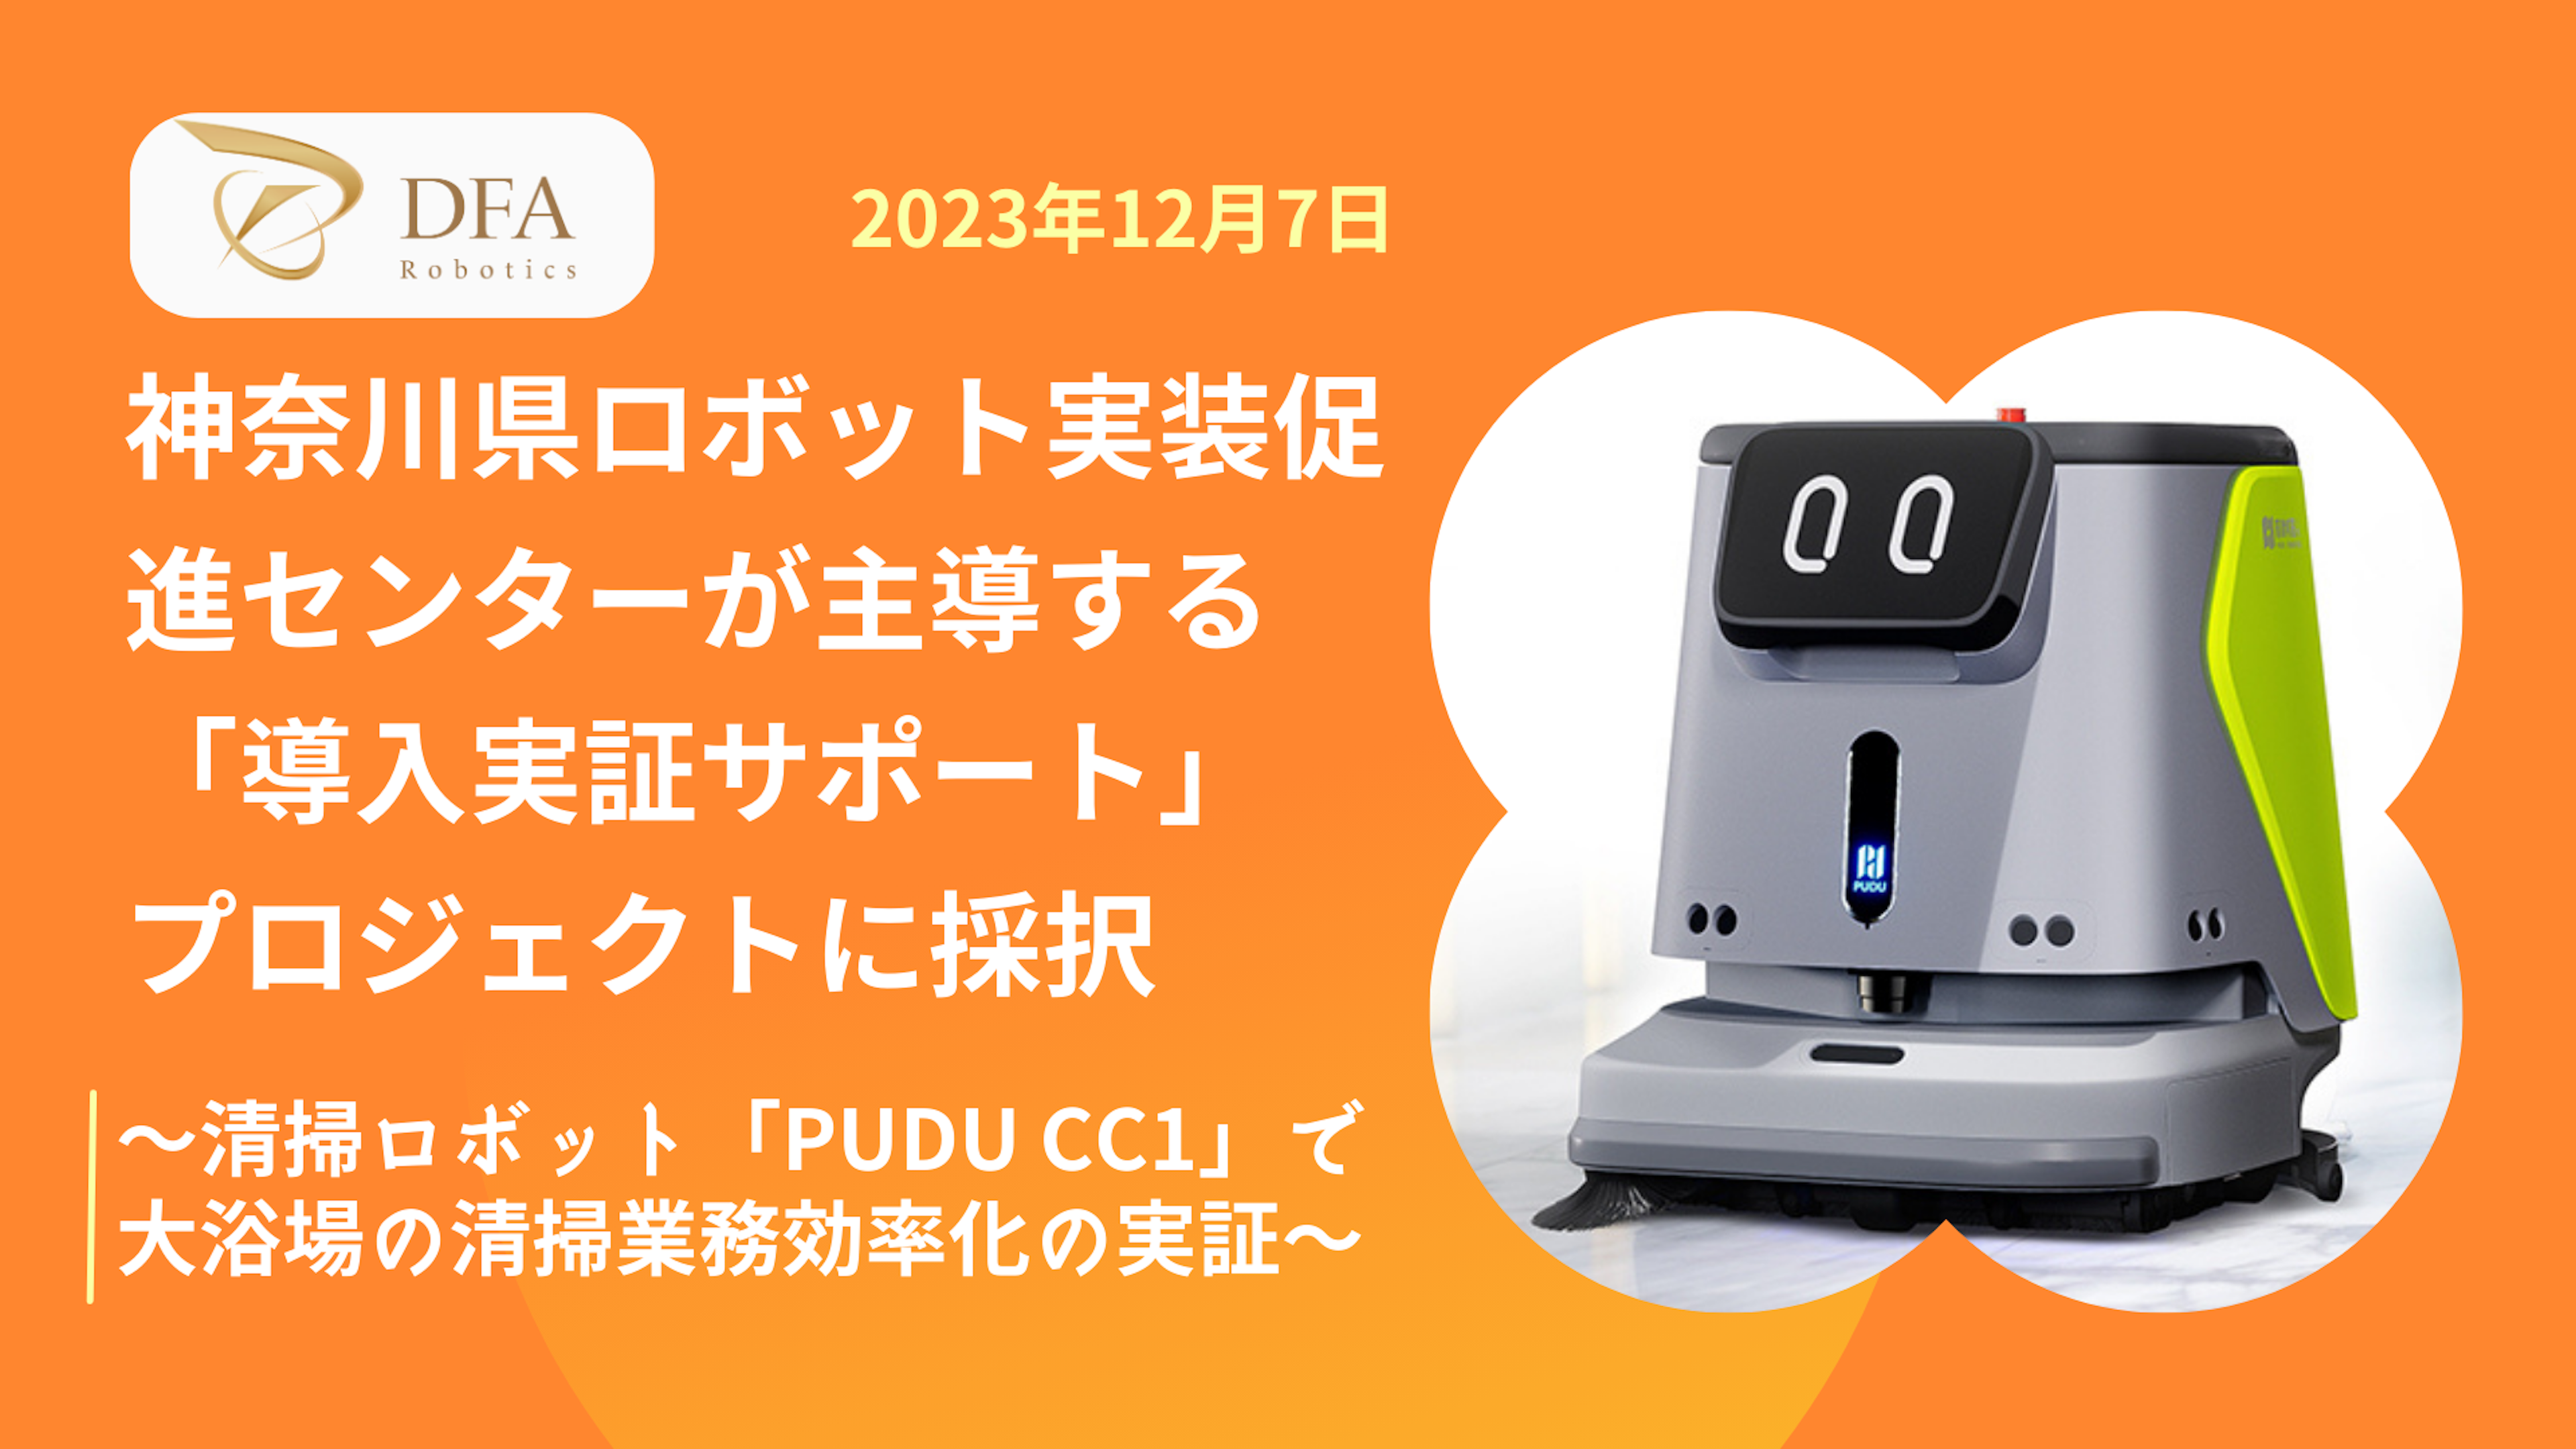 DFA Robotics、神奈川県ロボット実装促進センターが主導する「導入実証サポート」プロジェクトに採択
～清掃ロボット「PUDU CC1」による大浴場の清掃業務効率化の実証～のキービジュアル